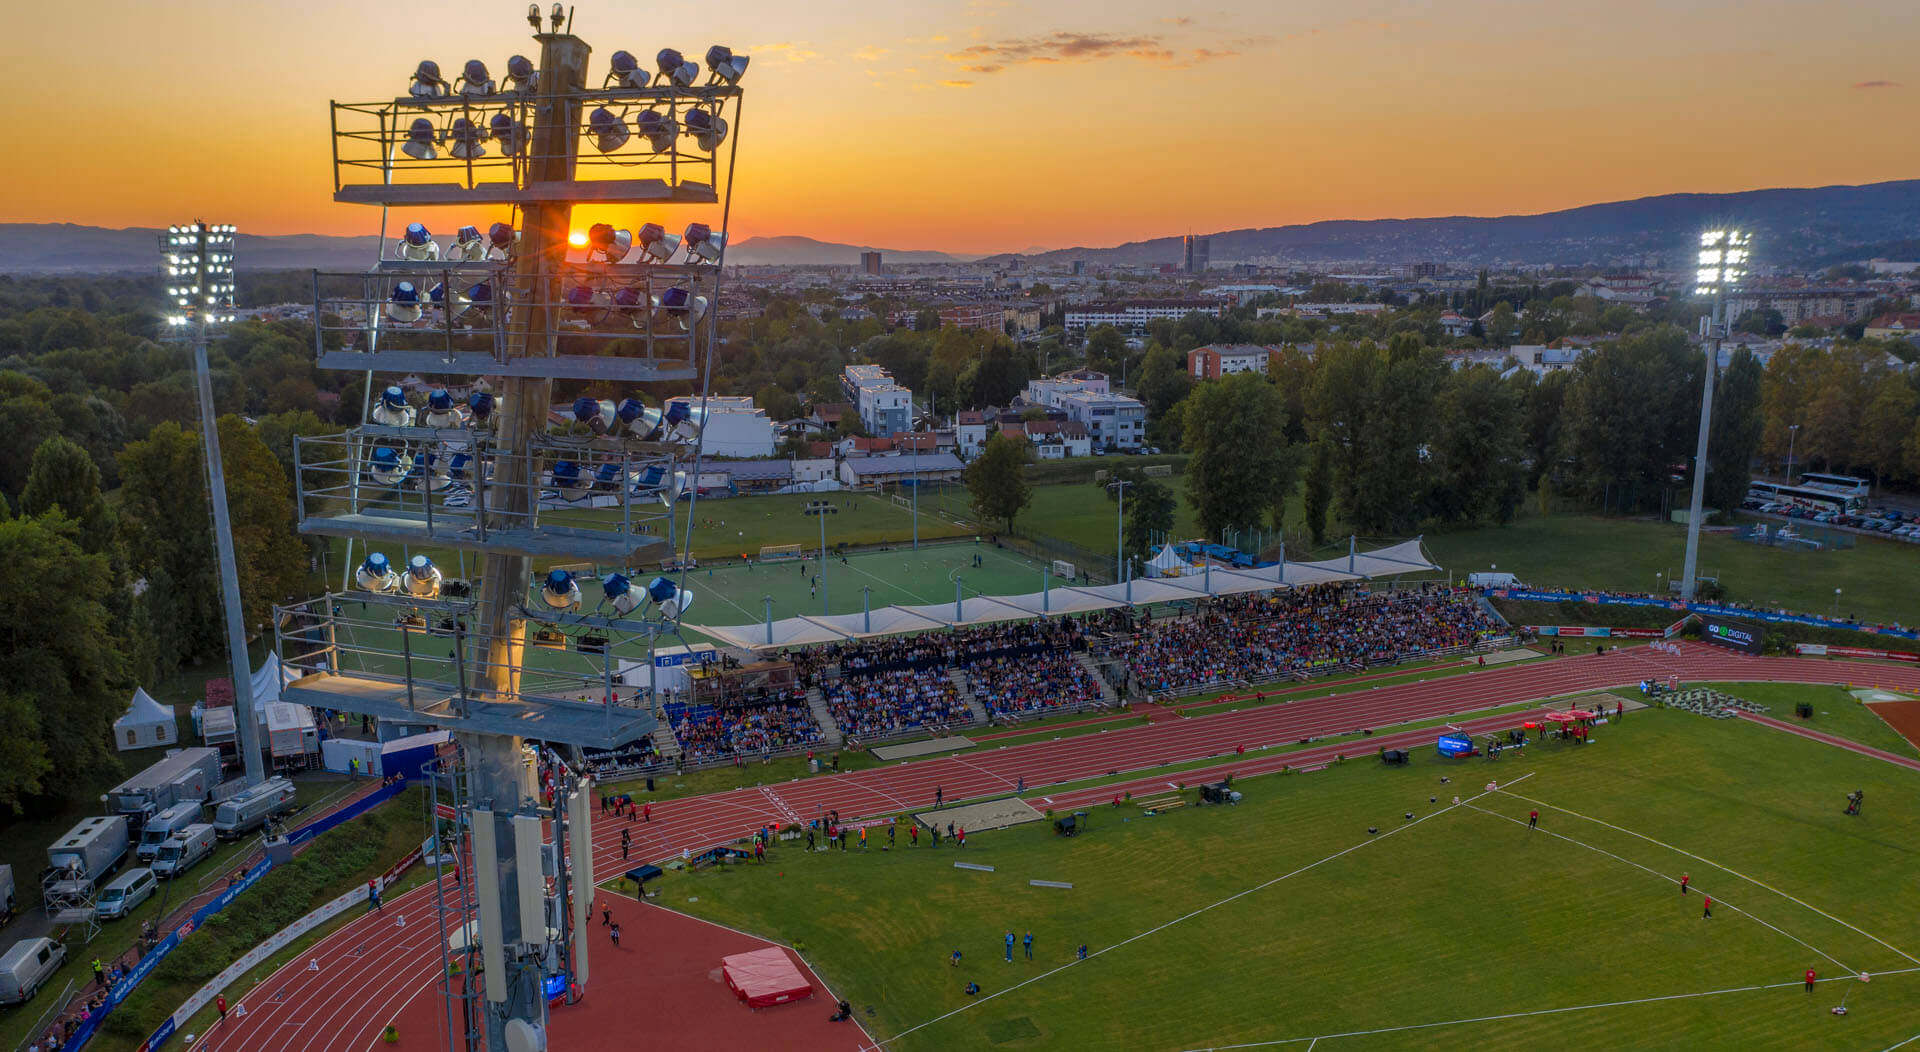 2019.09.03. Sports park Mladost, Zagreb 2